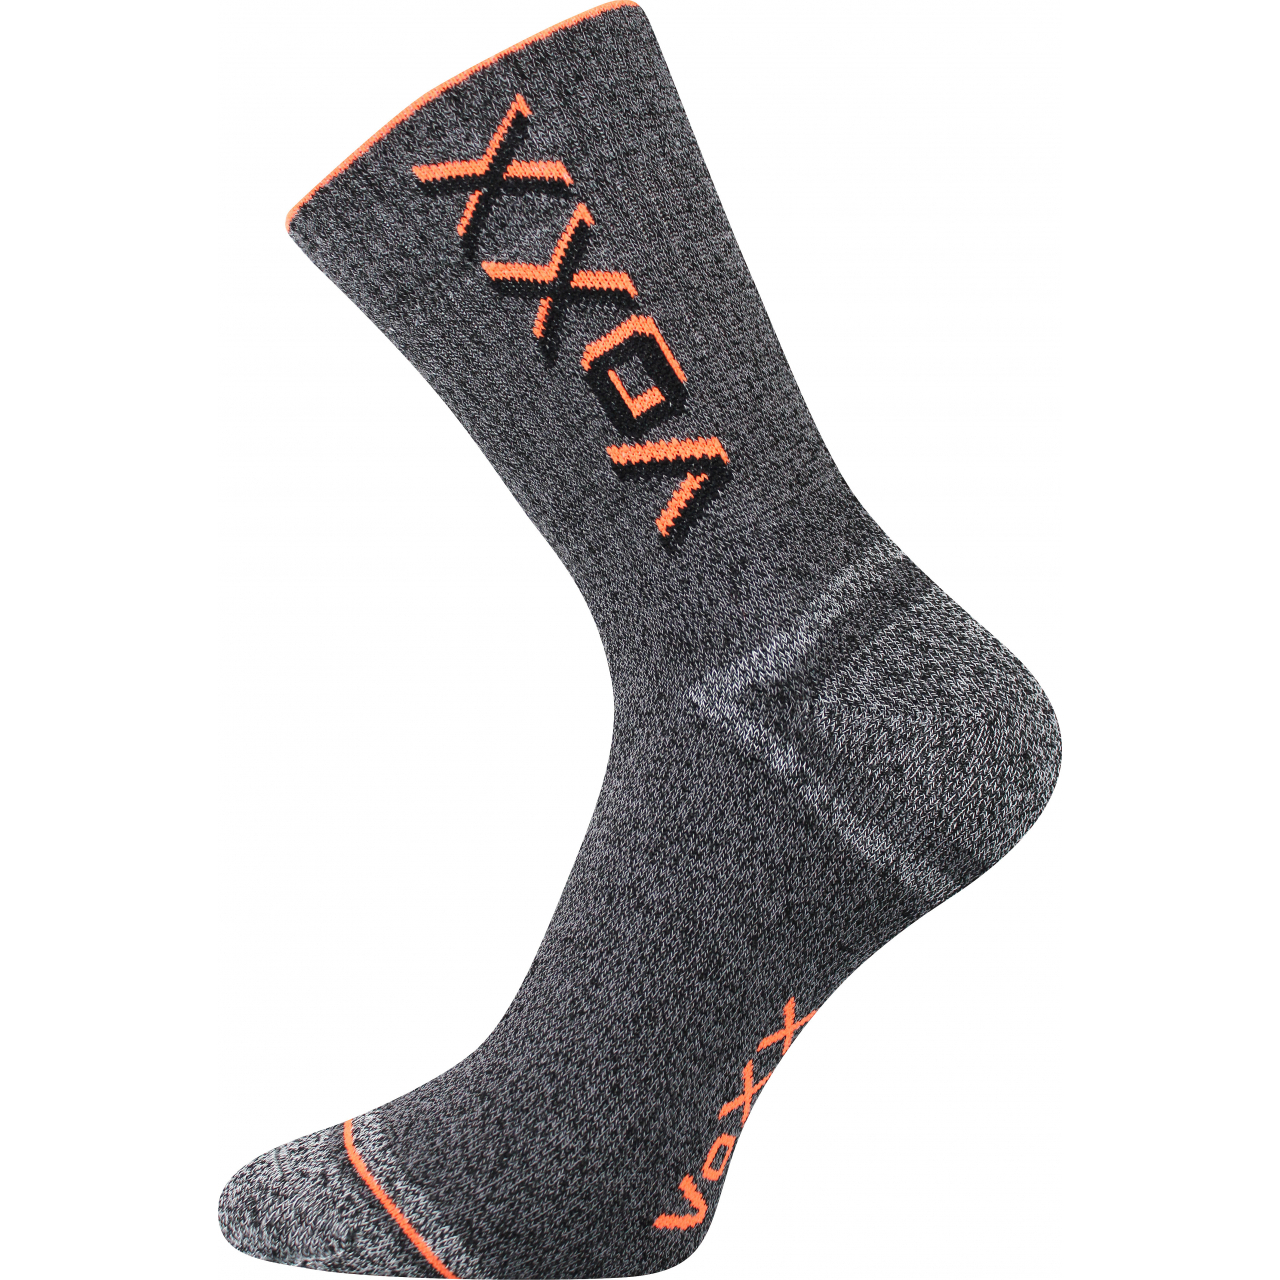 Ponožky unisex froté Voxx Hawk - šedé-oranžové, 43-46